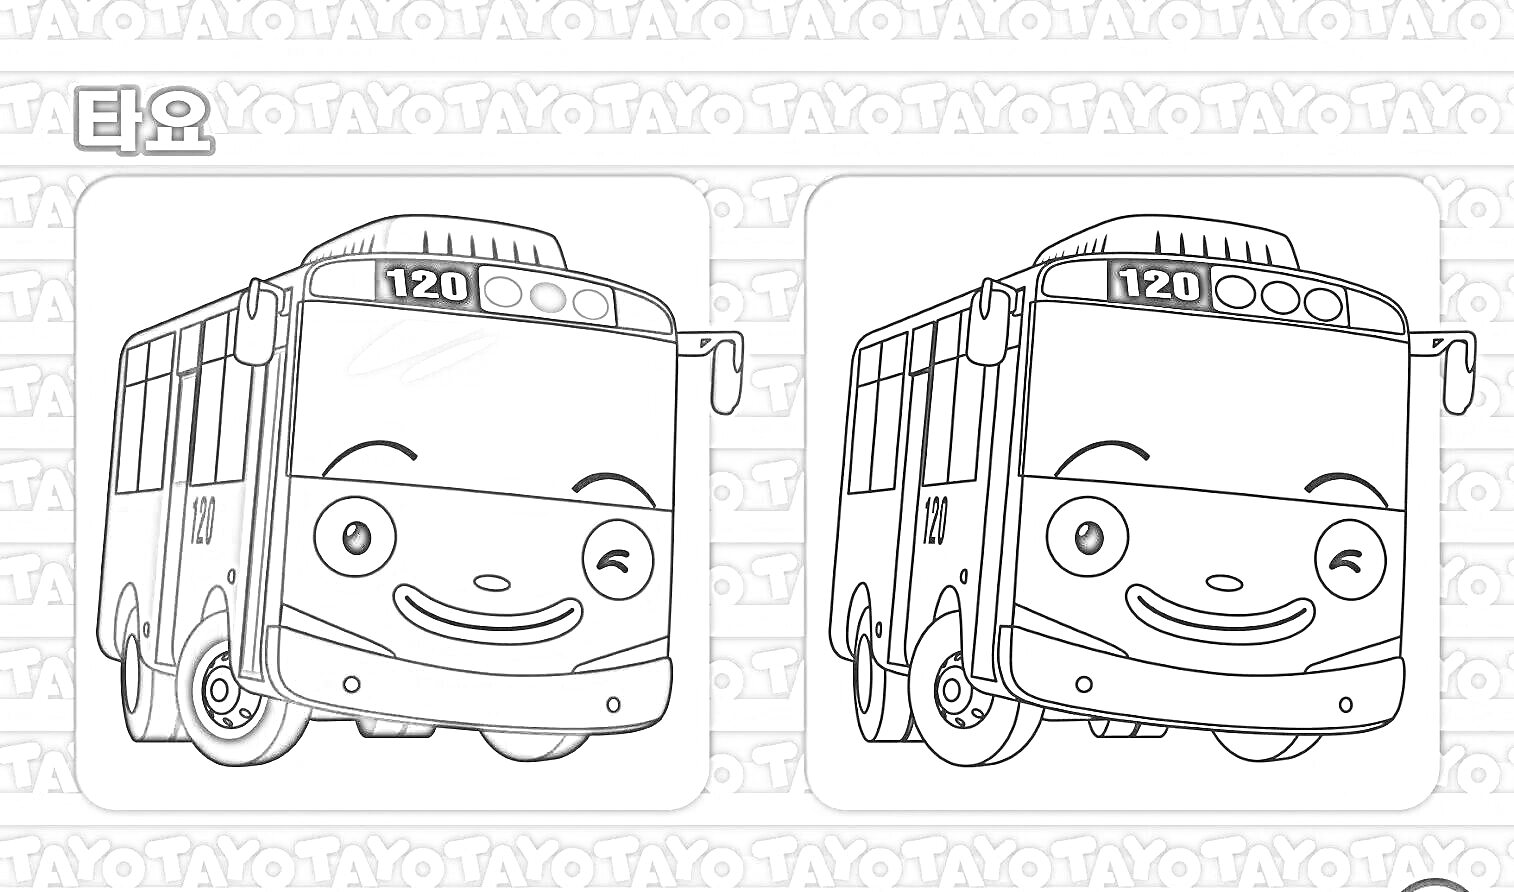 Раскраска Синий автобус с улыбающимся лицом 120 и его раскраска